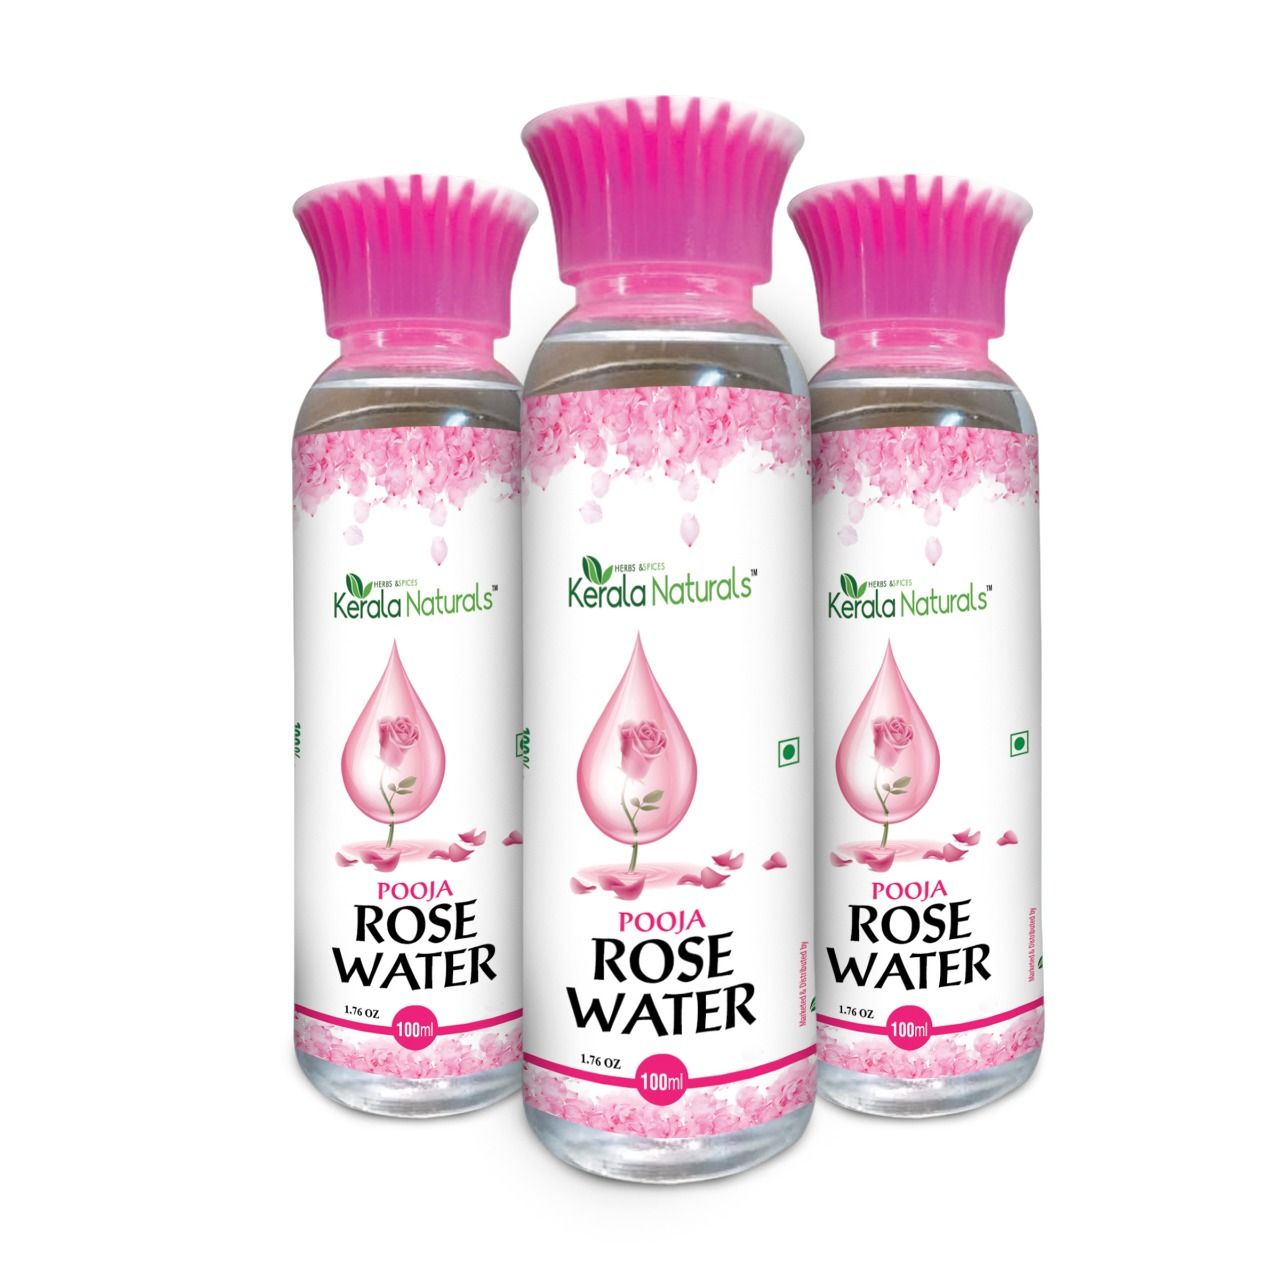 Kerala Naturals Rose water 300ml